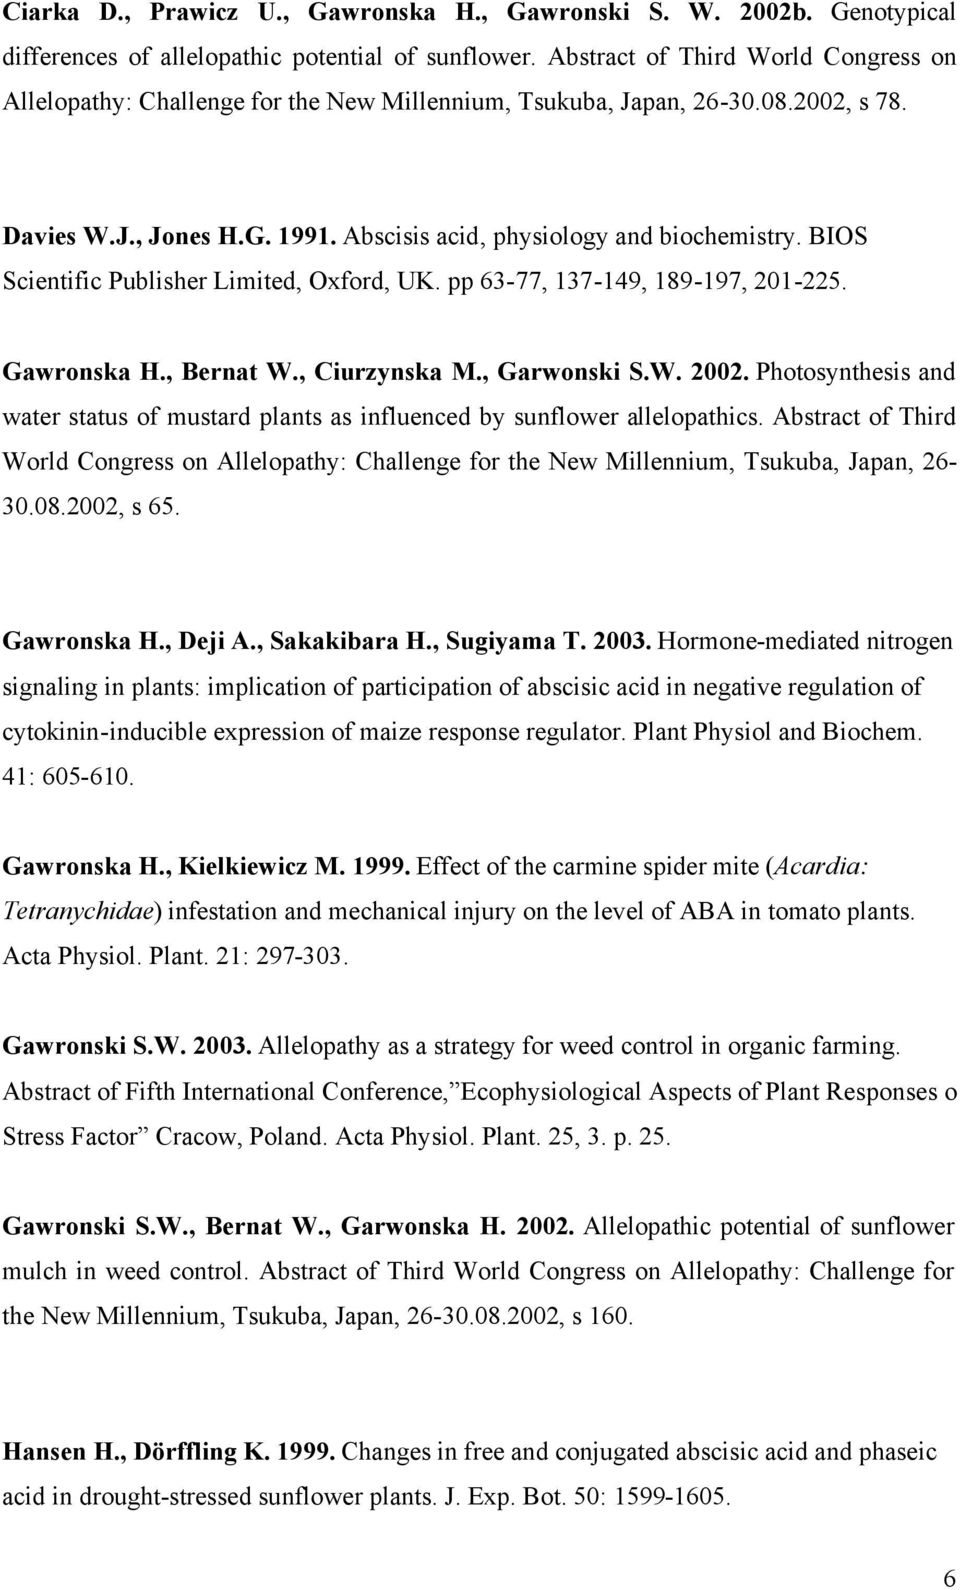 BIOS Scientific Publisher Limited, Oxford, UK. pp 63-77, 137-149, 189-197, 201-225. Gawronska H., Bernat W., Ciurzynska M., Garwonski S.W. 2002.